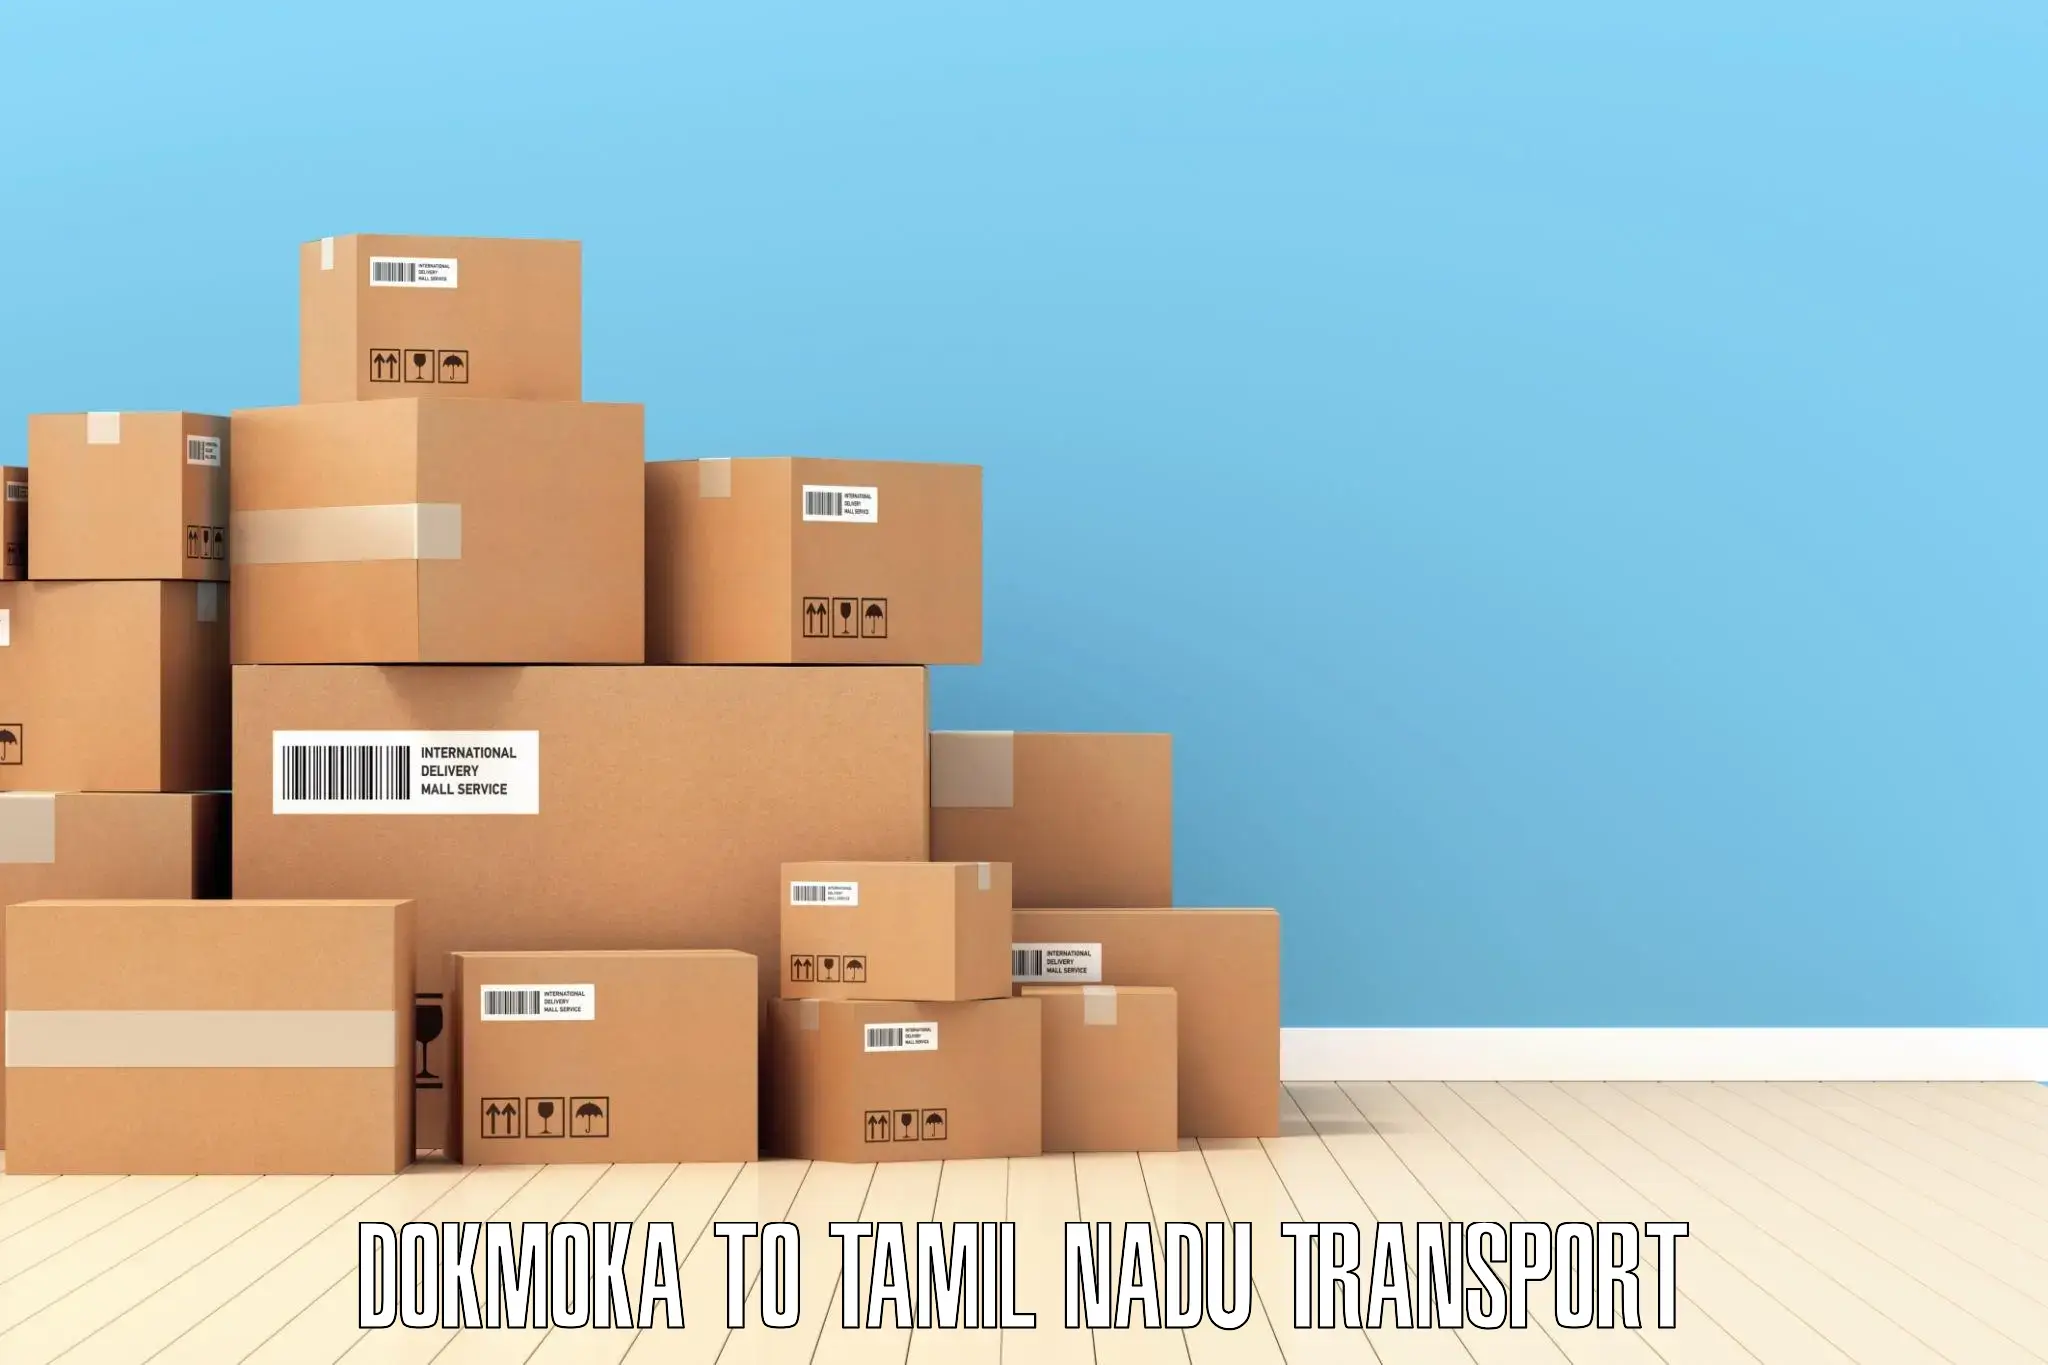 Intercity transport Dokmoka to Tindivanam